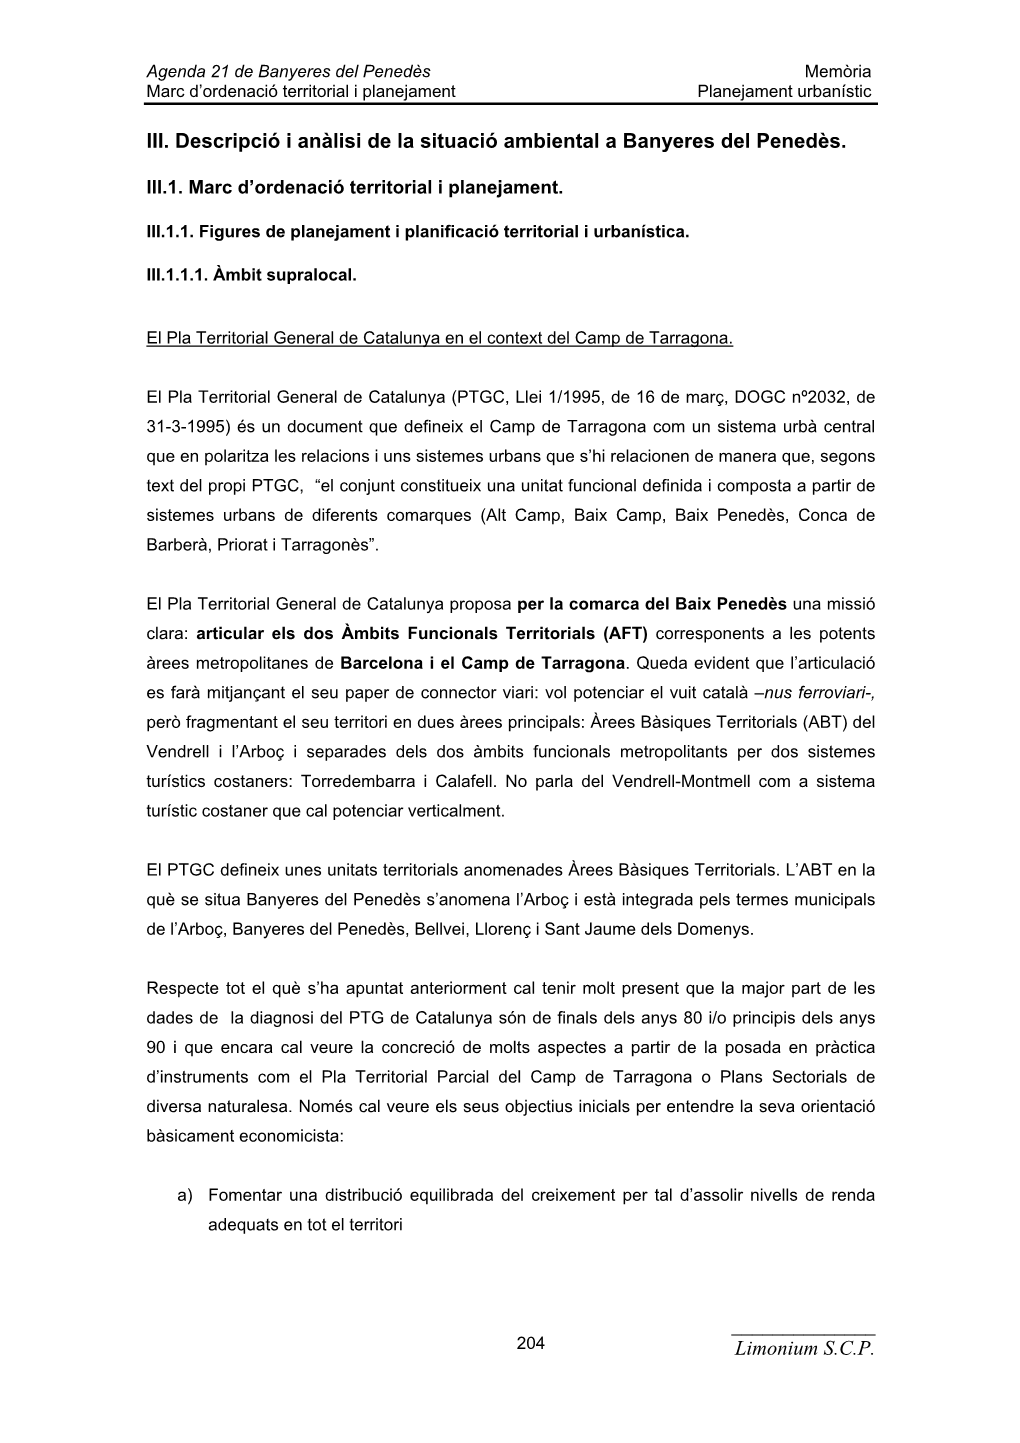 Limonium SCP III. Descripció I Anàlisi De La Situació Ambiental a Banyeres